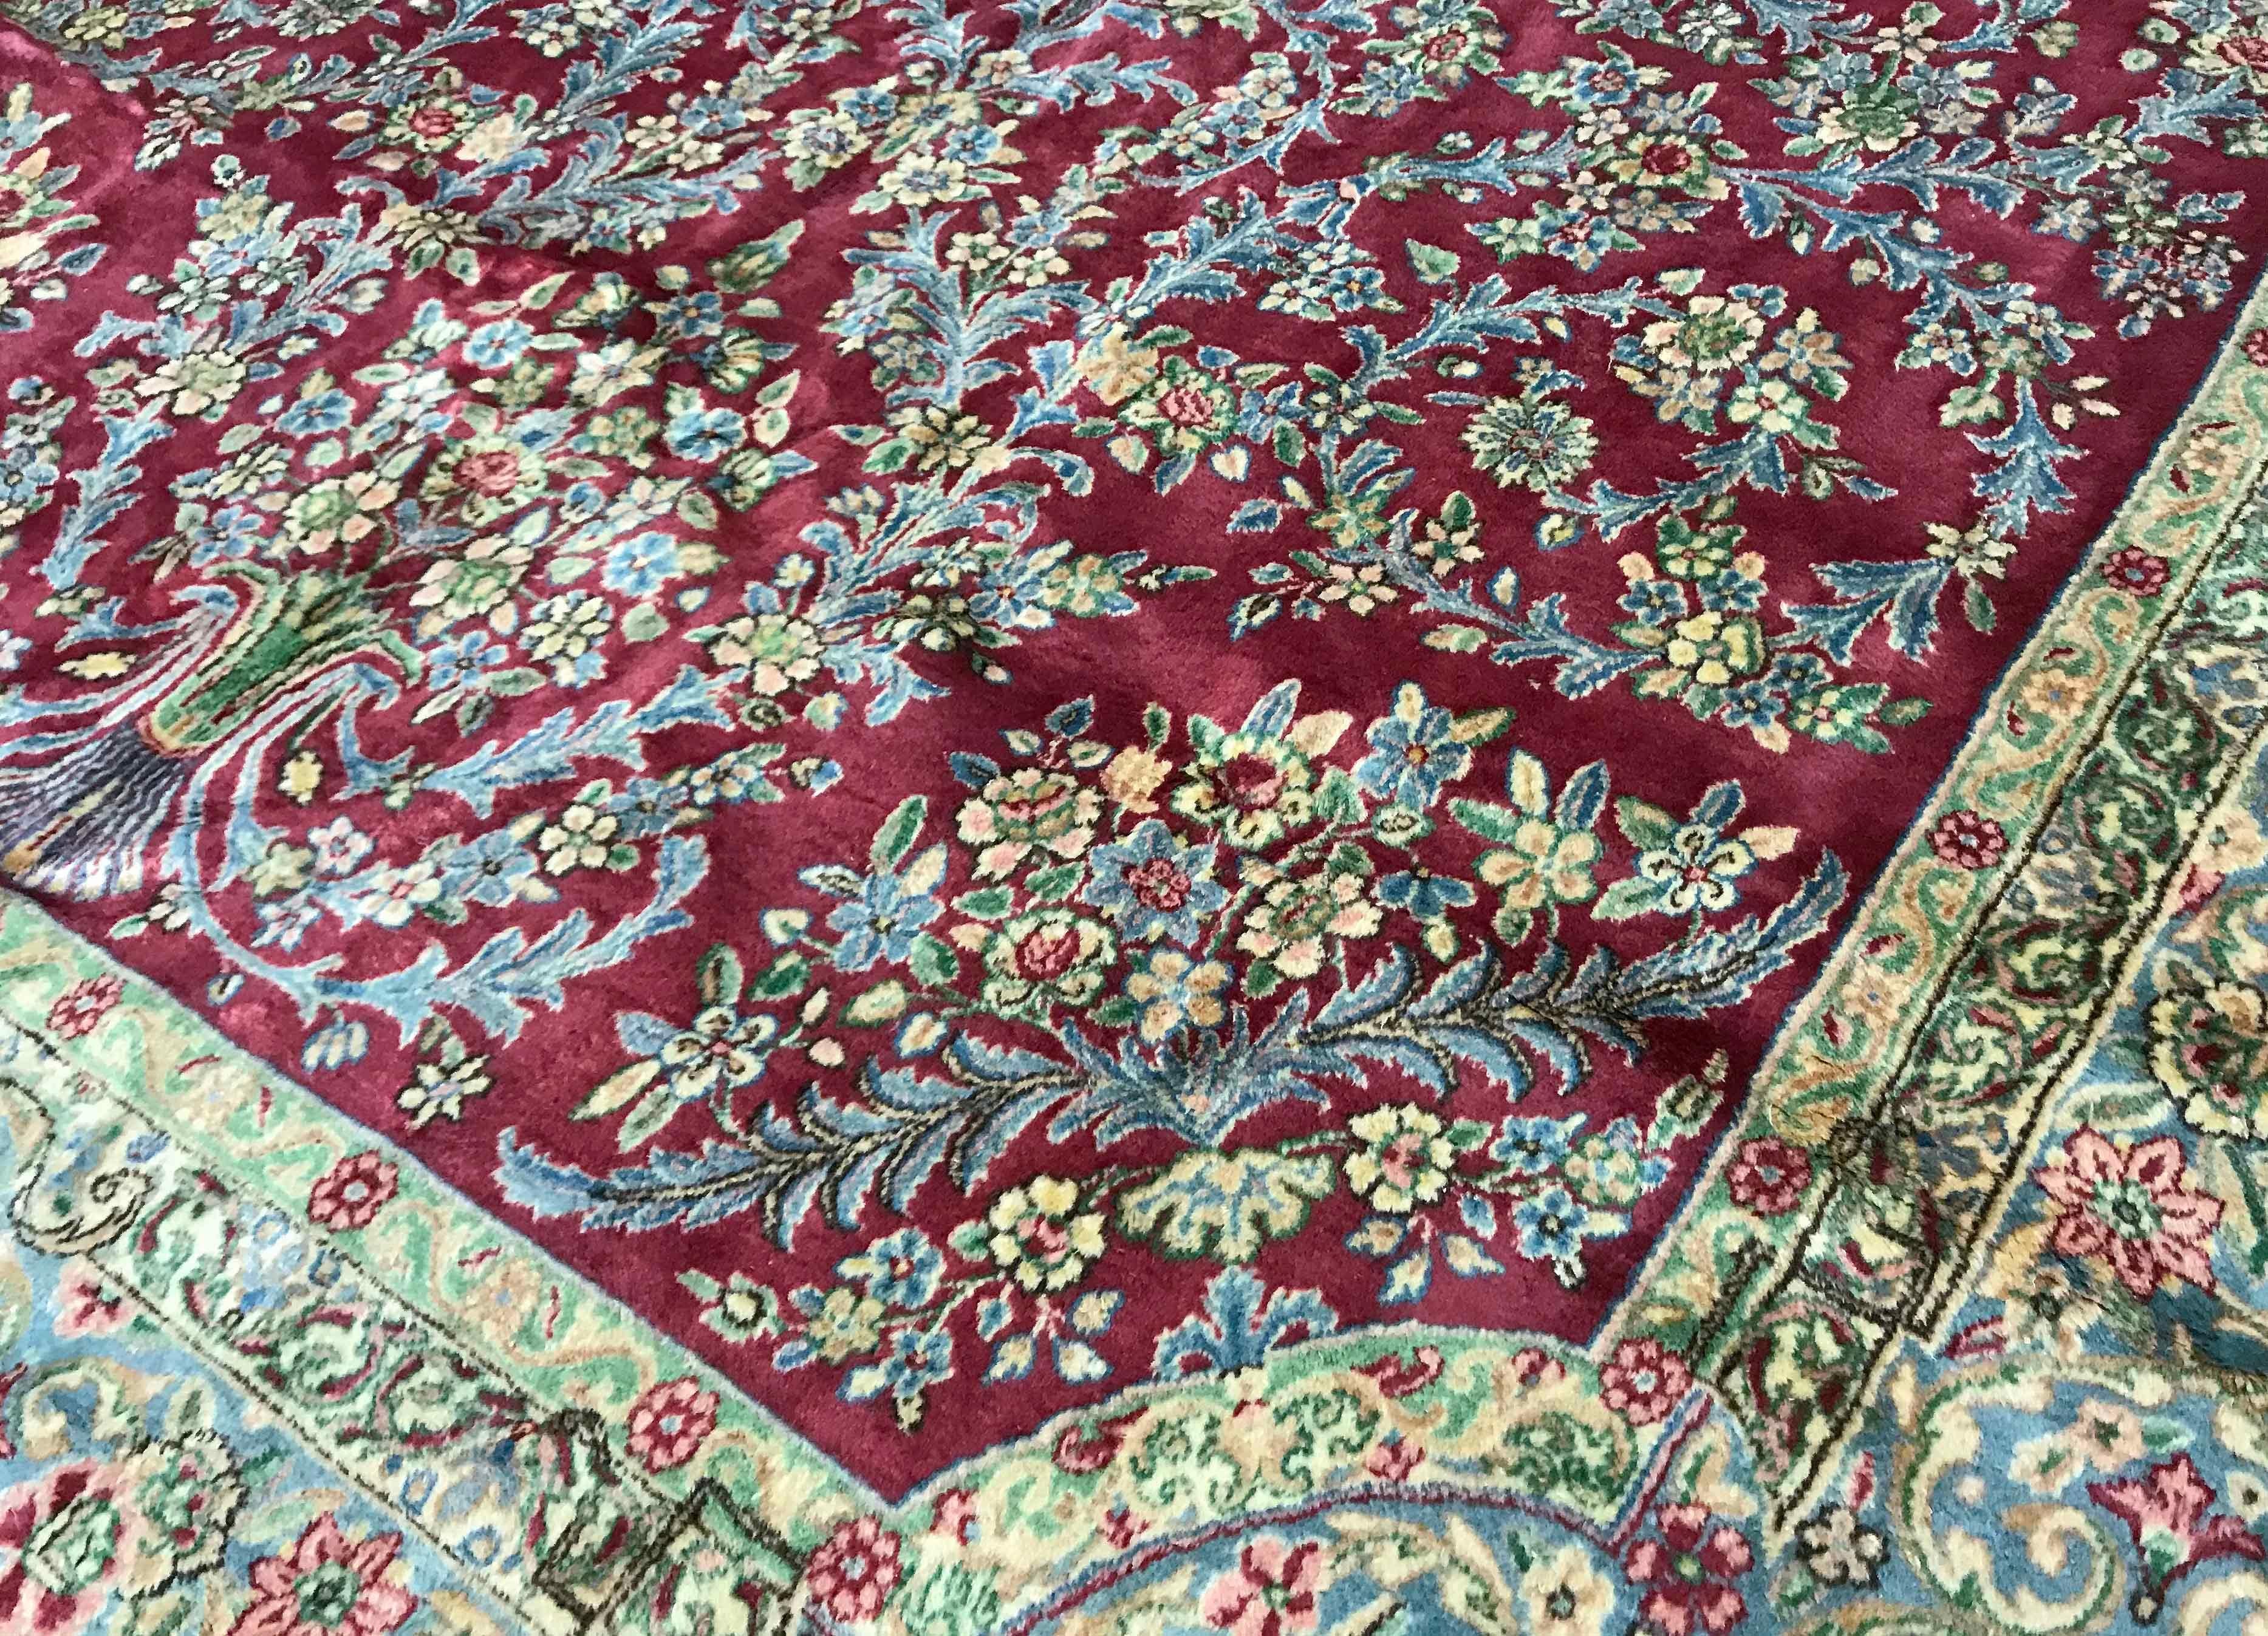 Persischer Kerman-Teppich in Übergröße, um 1940. Auf einem schönen roten Grund, der mit Blumen und Ranken gefüllt ist und ein zentrales Medaillon mit einer Hauptbordüre umgibt, die die floralen Muster wiederholt. Größe: 7'11 x 20'7.